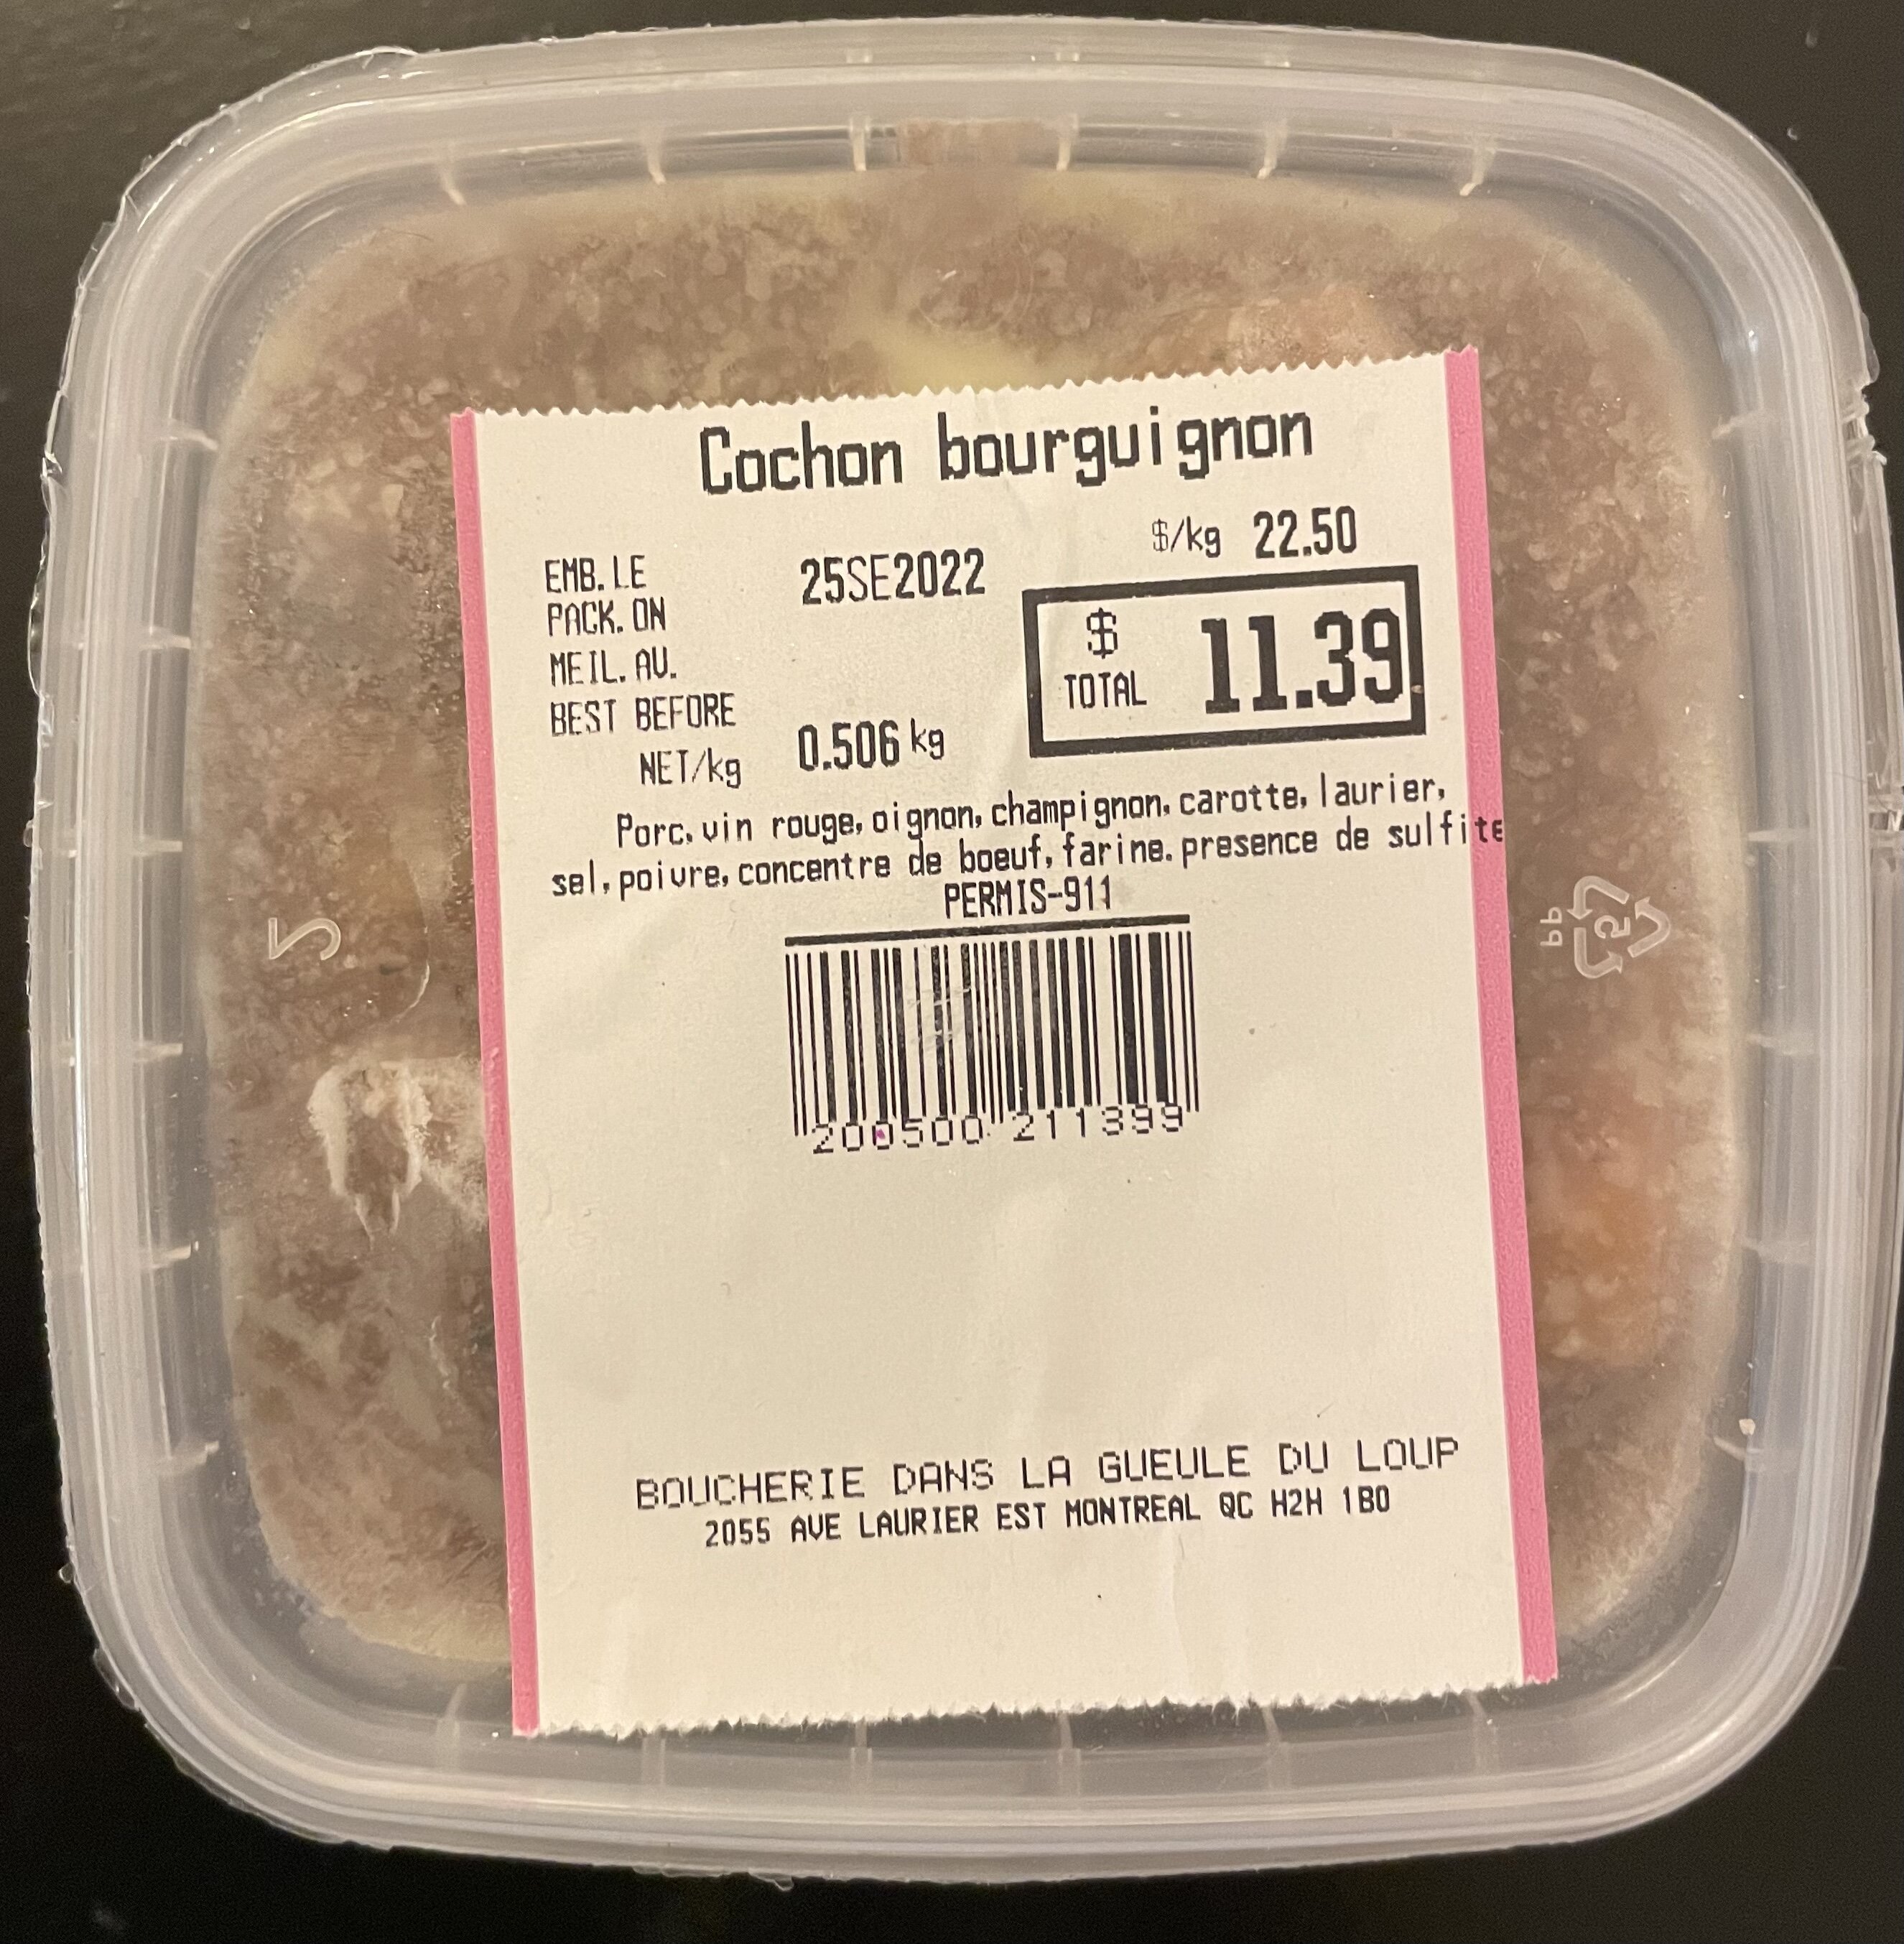 Cochon bourguignon